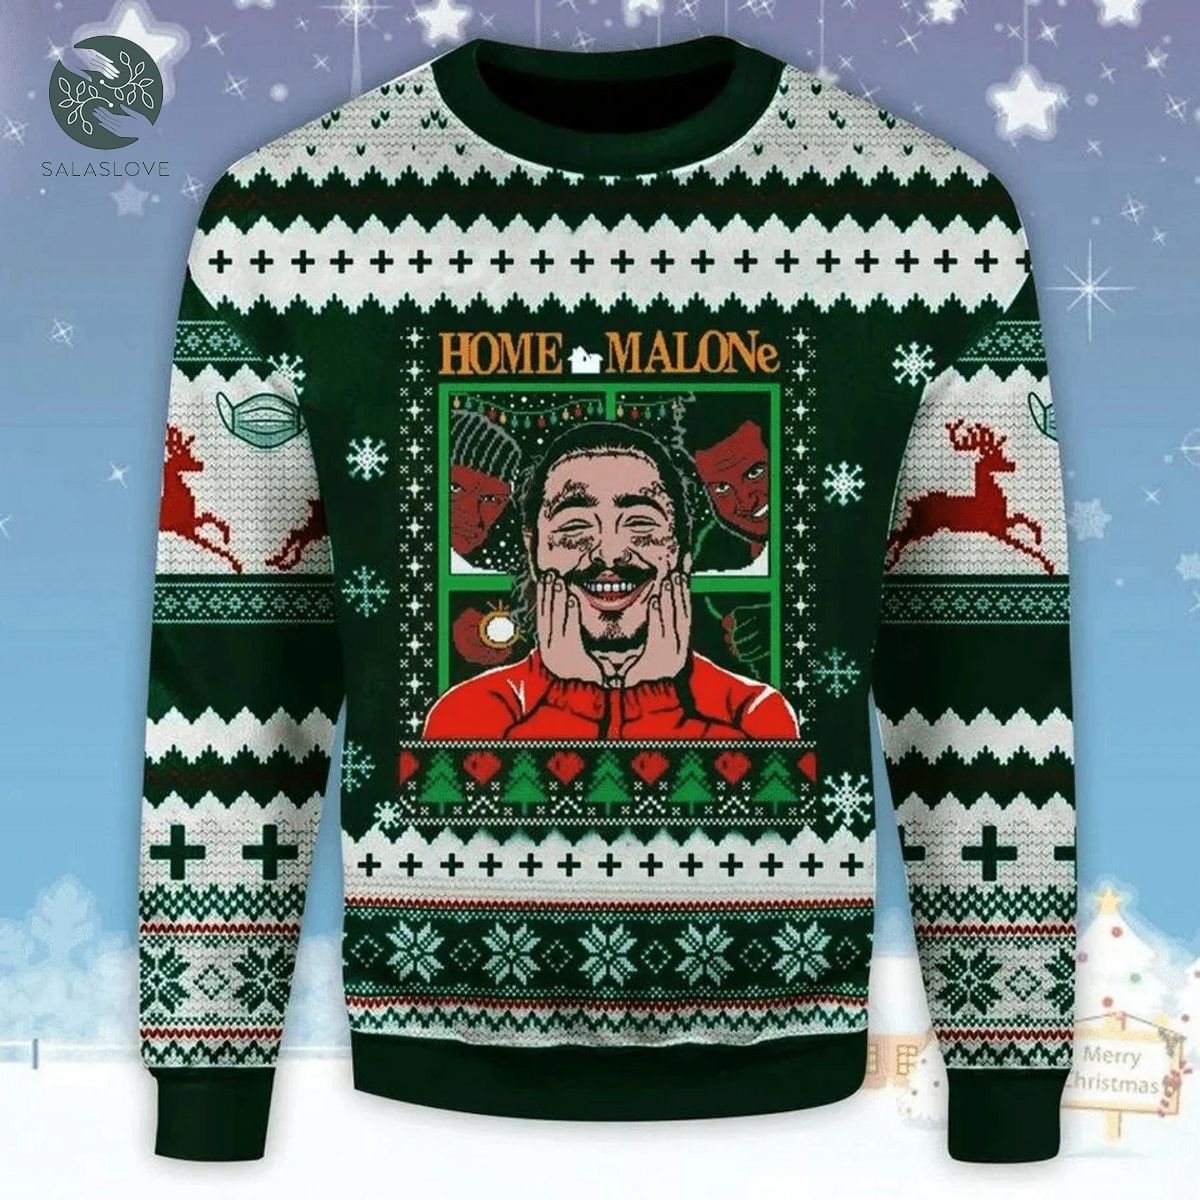 Home Post Malone Christmas Christmas Wool Ugly Knitted Christmas Sweatshirt

